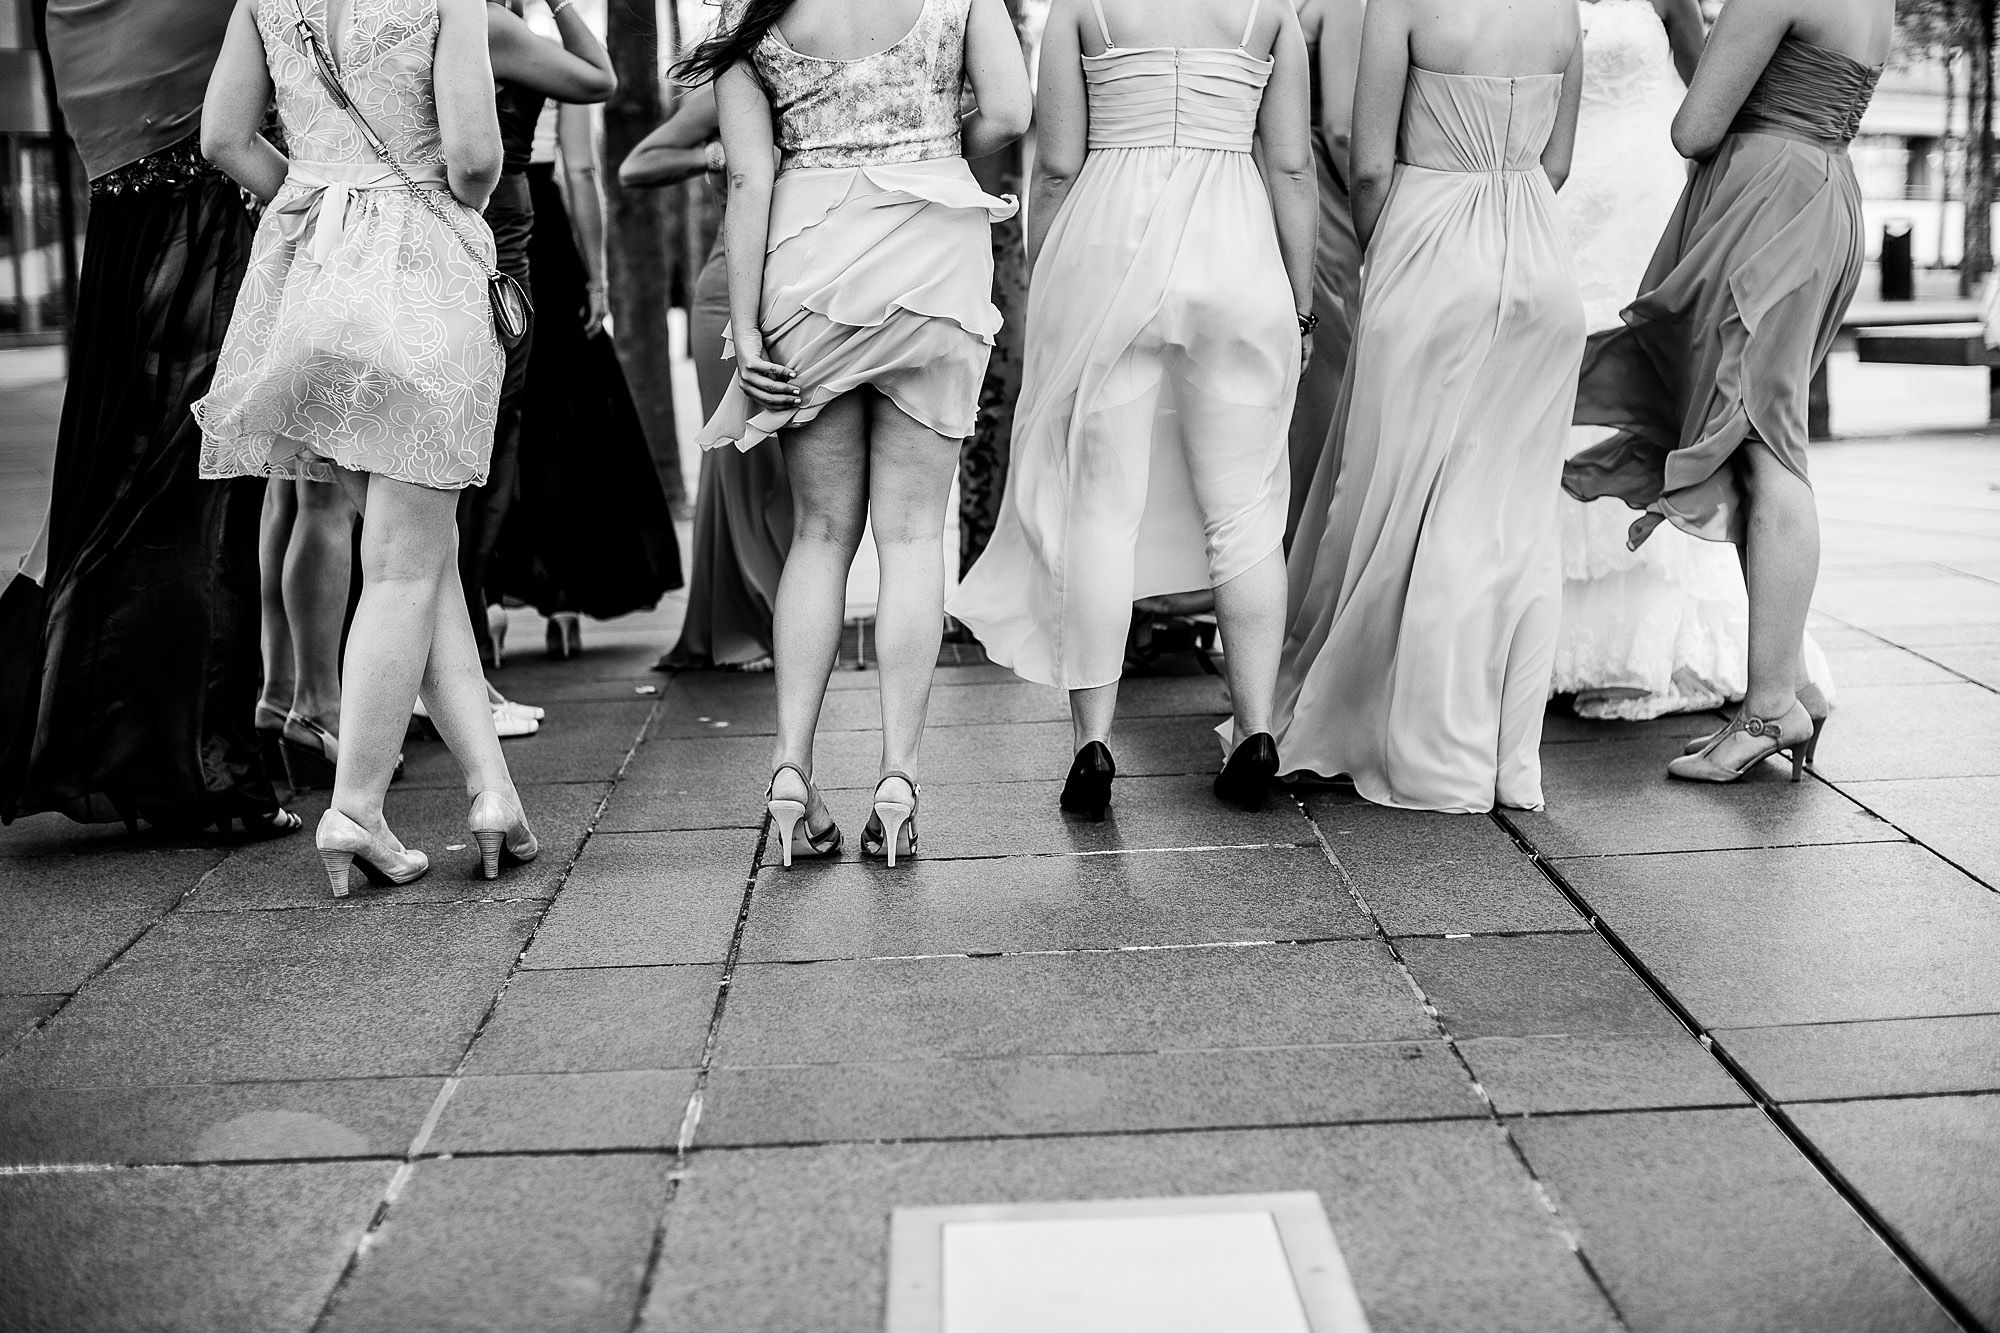 Luxemburg, Hochzeitsgäste, windy, röcke, Hochzeitskleid, Festkleid, Weddingguests, Hochezeitstag, schwarzweiß, fun, party, empfang, feier